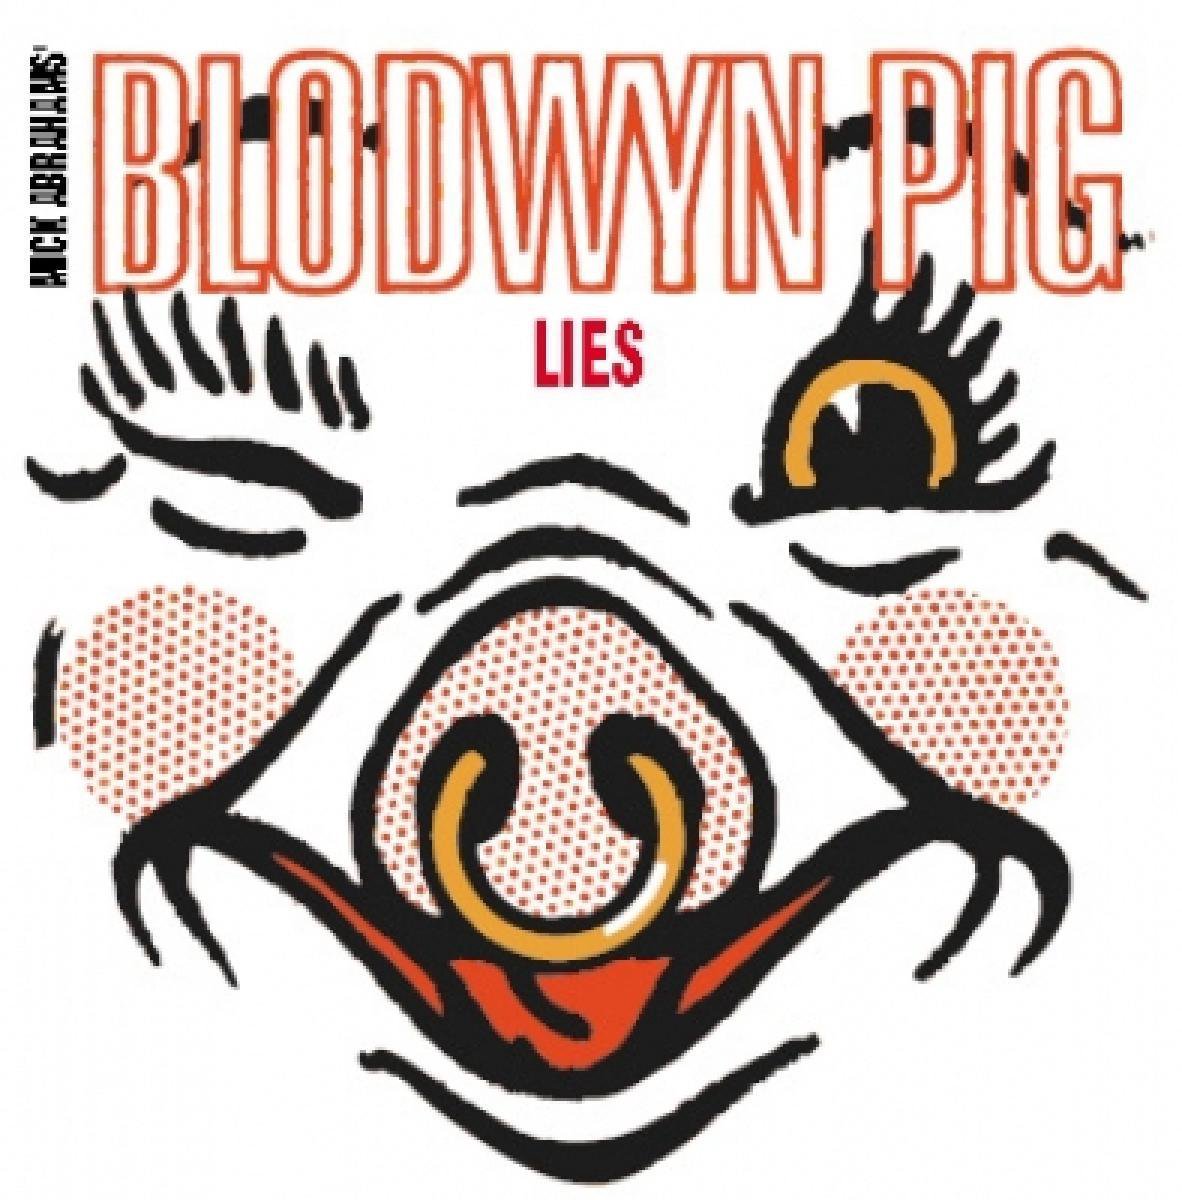 Lies - Blodwyn Pig